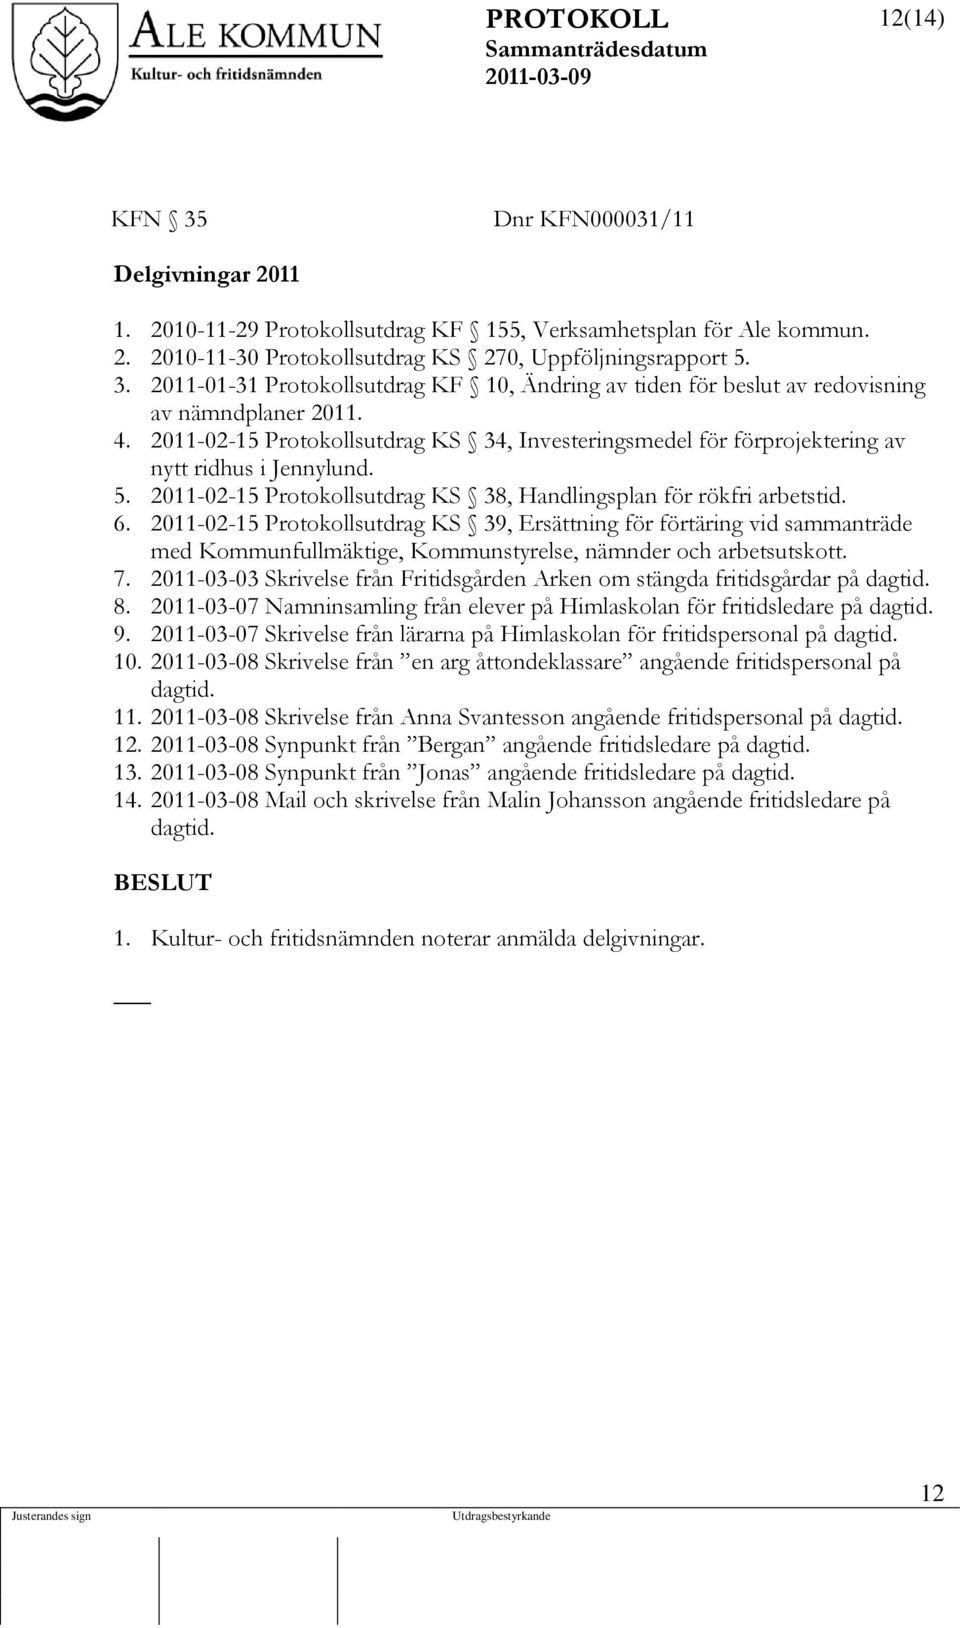 2011-02-15 Protokollsutdrag KS 39, Ersättning för förtäring vid sammanträde med Kommunfullmäktige, Kommunstyrelse, nämnder och arbetsutskott. 7.